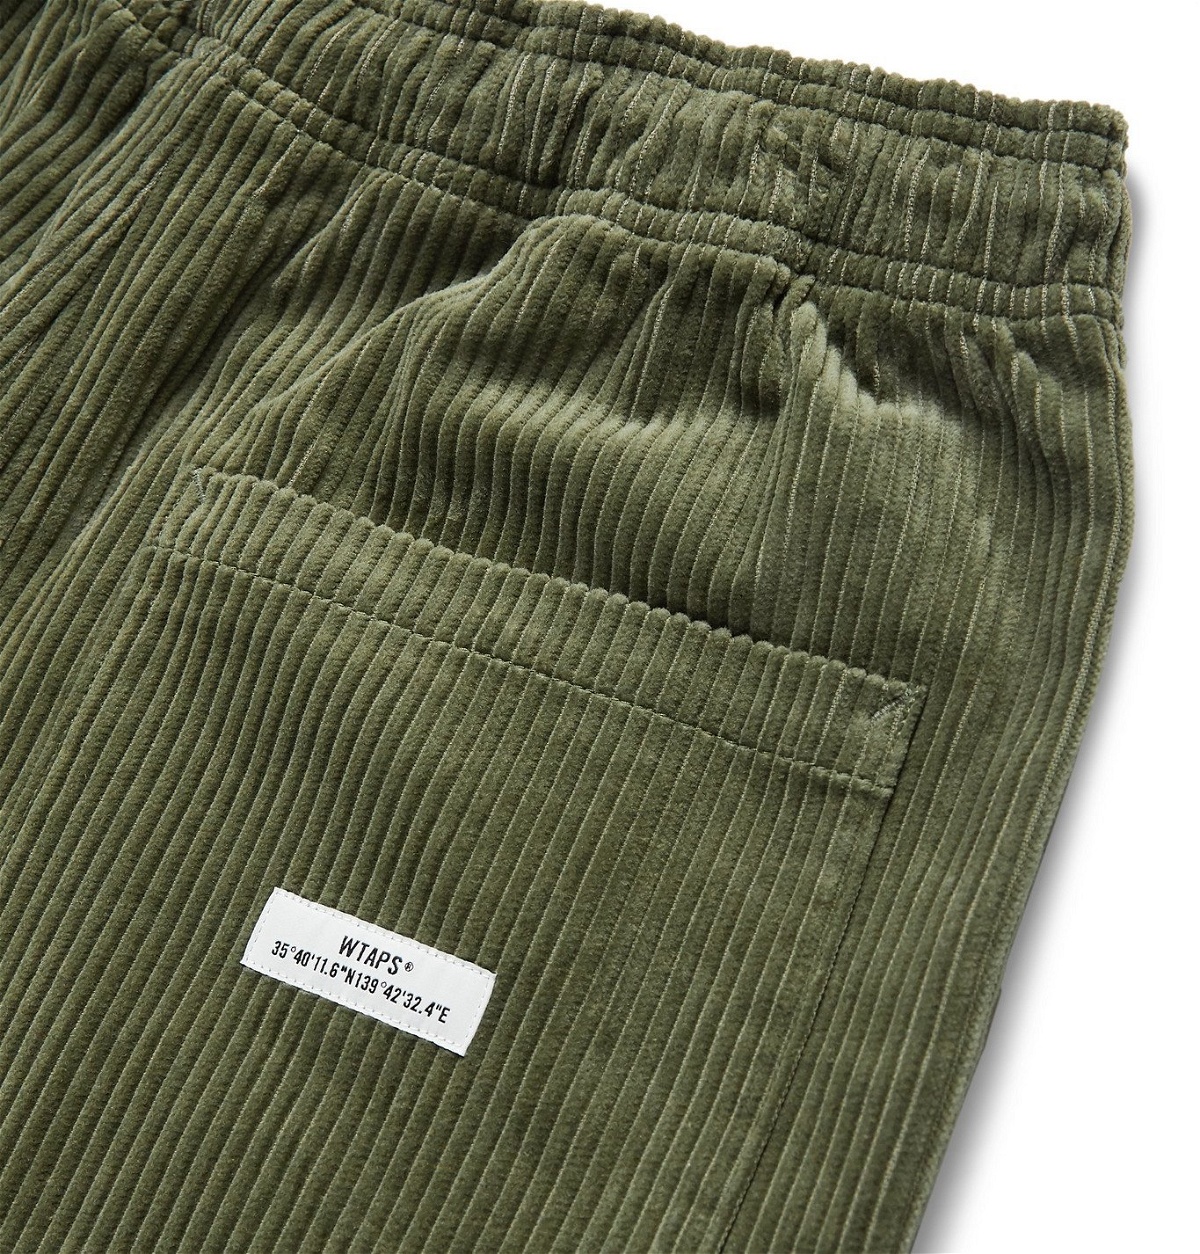 WTAPS - Chef Cropped Cotton-Corduroy Drawstring Trousers - Green WTAPS